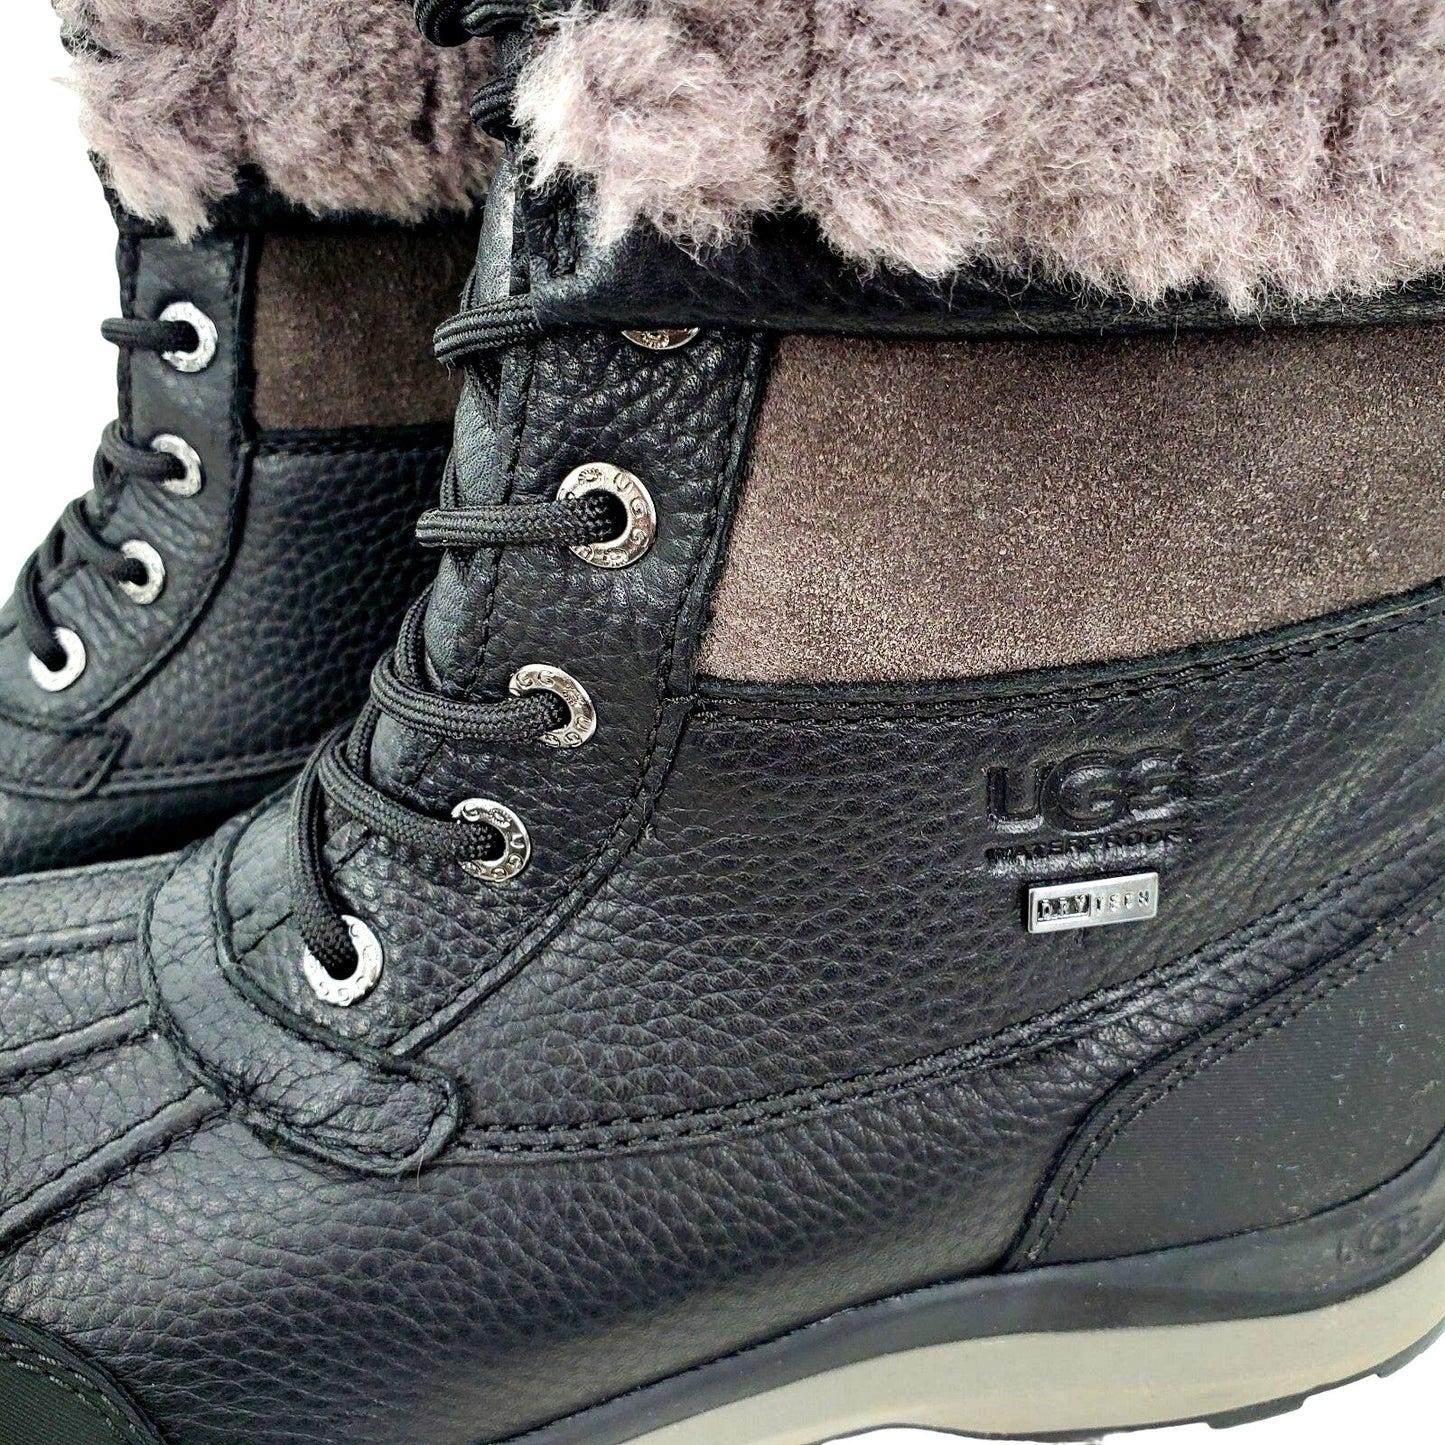 UGG AUSTRALIA Boots Adirondack III Winter Waterproof Sheepskin Leather